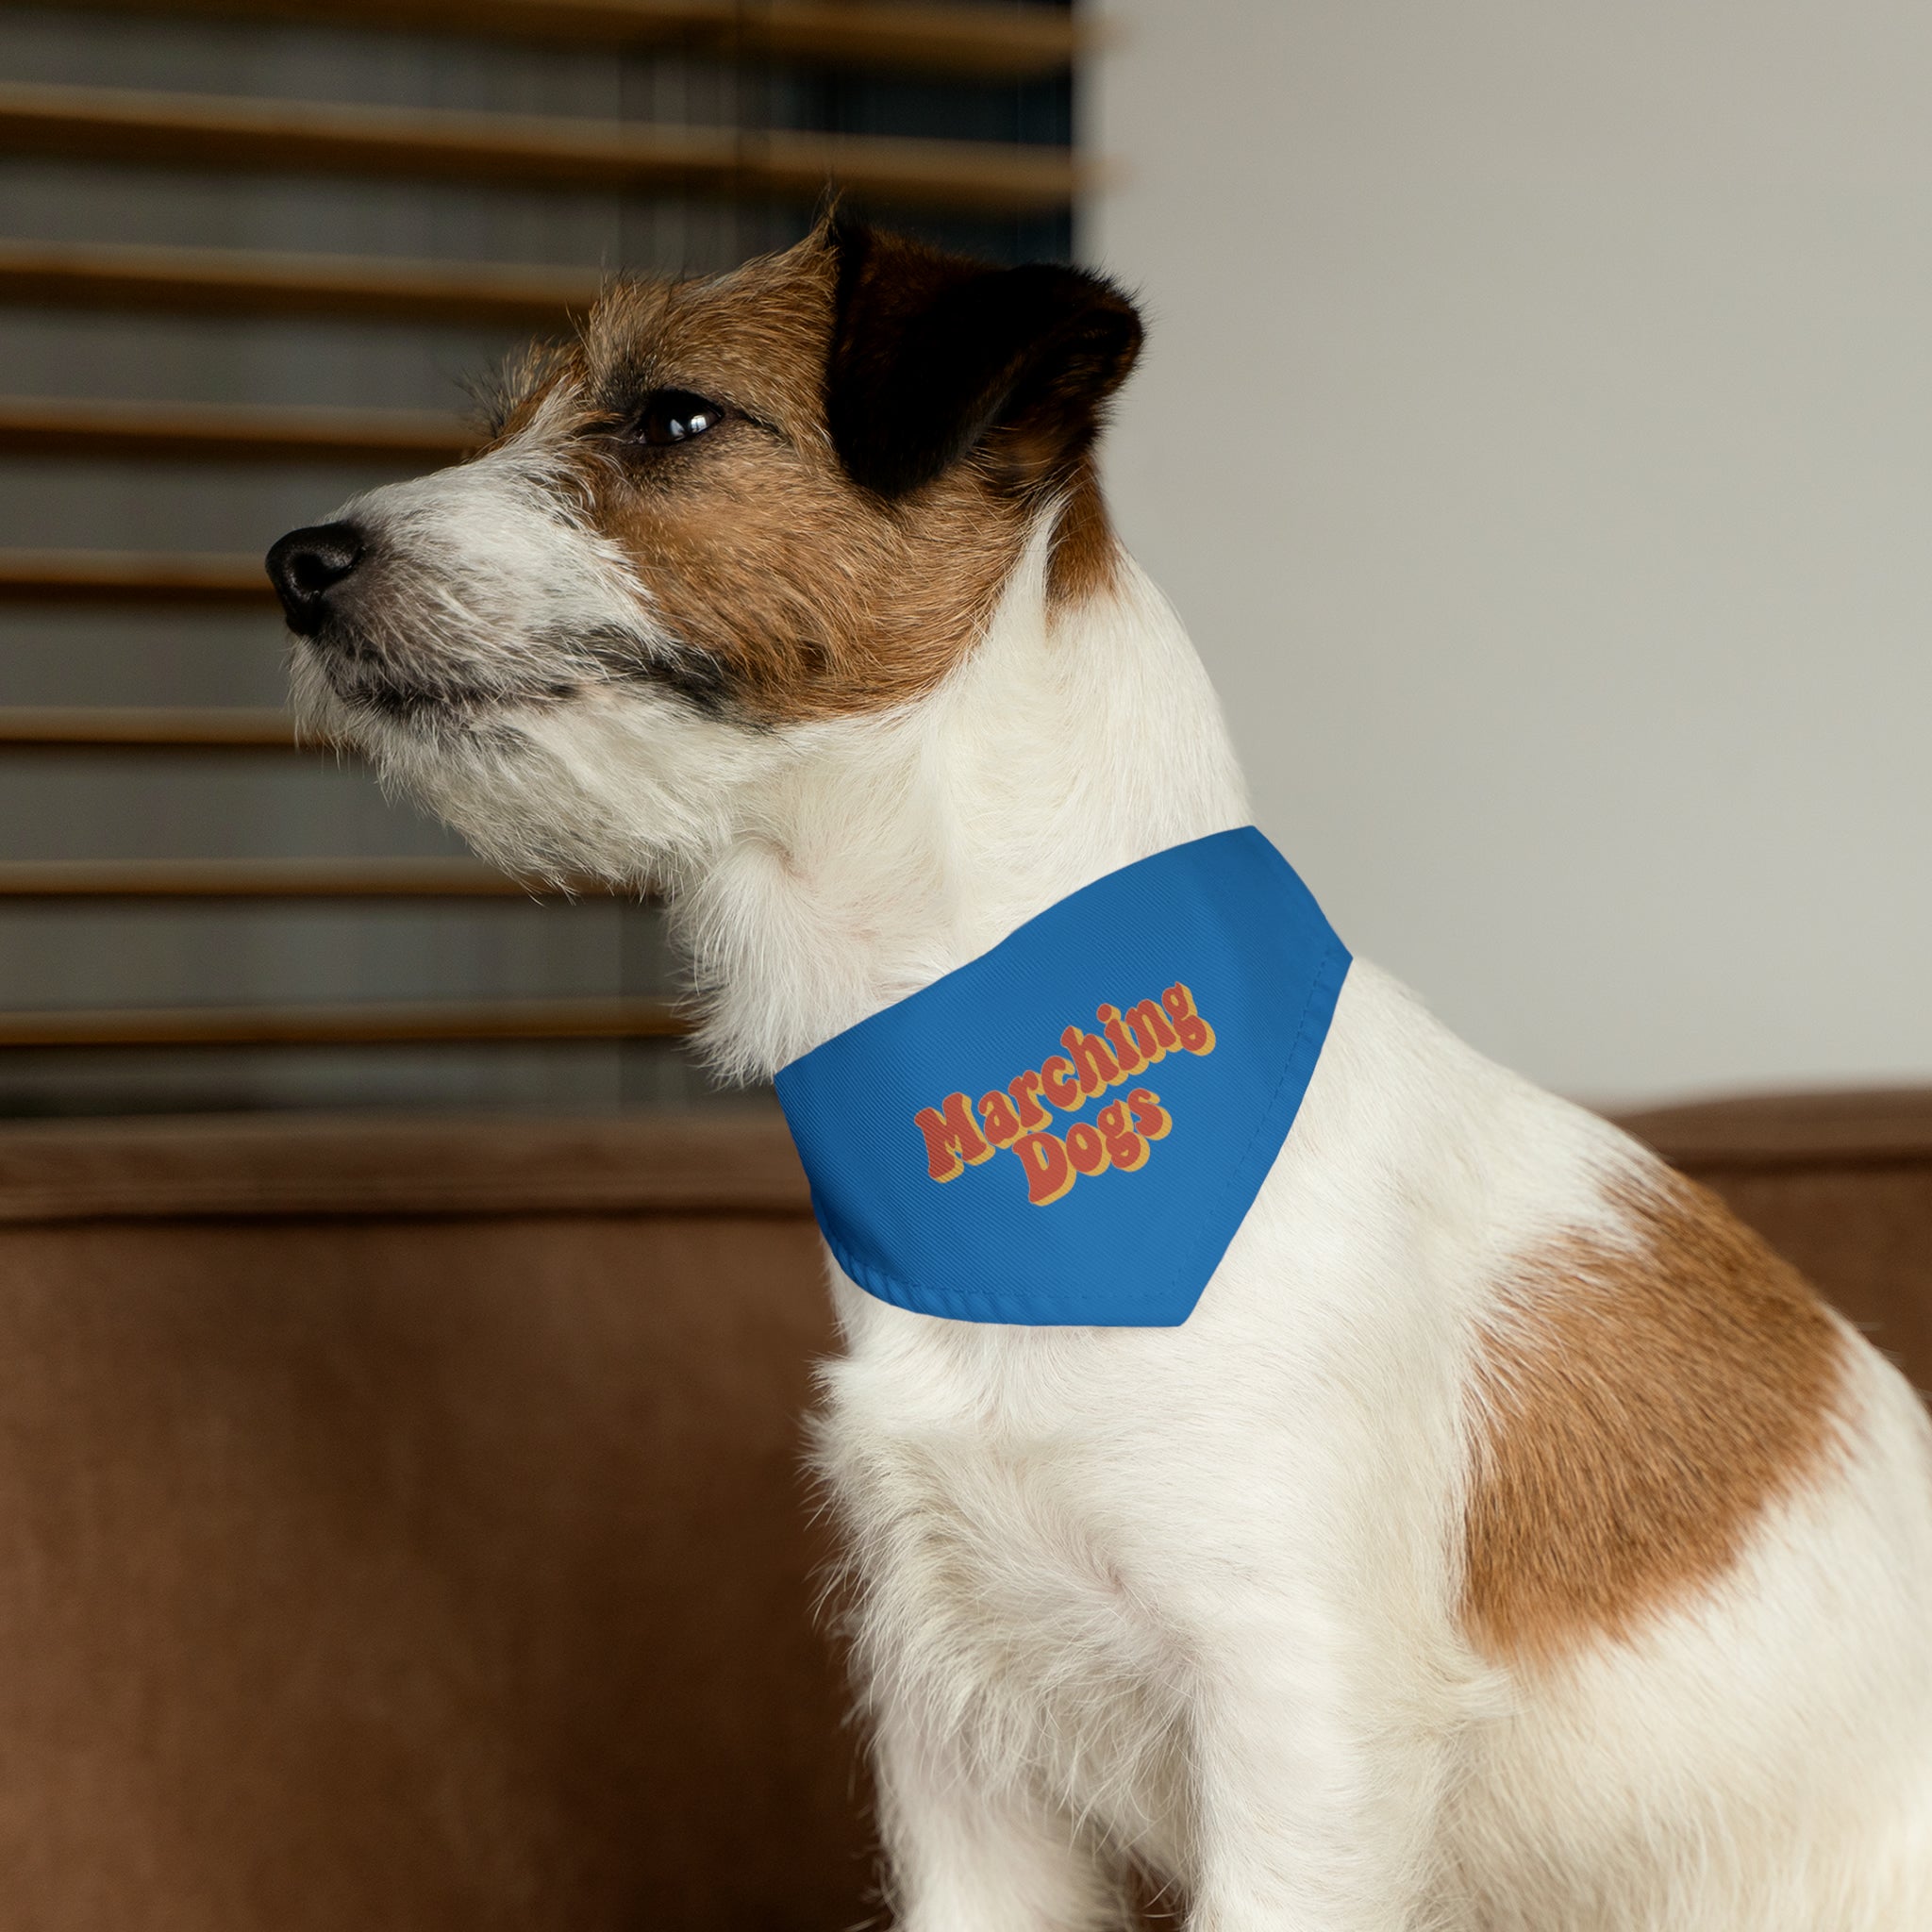 Collar de bandana para mascotas Marching Dogs